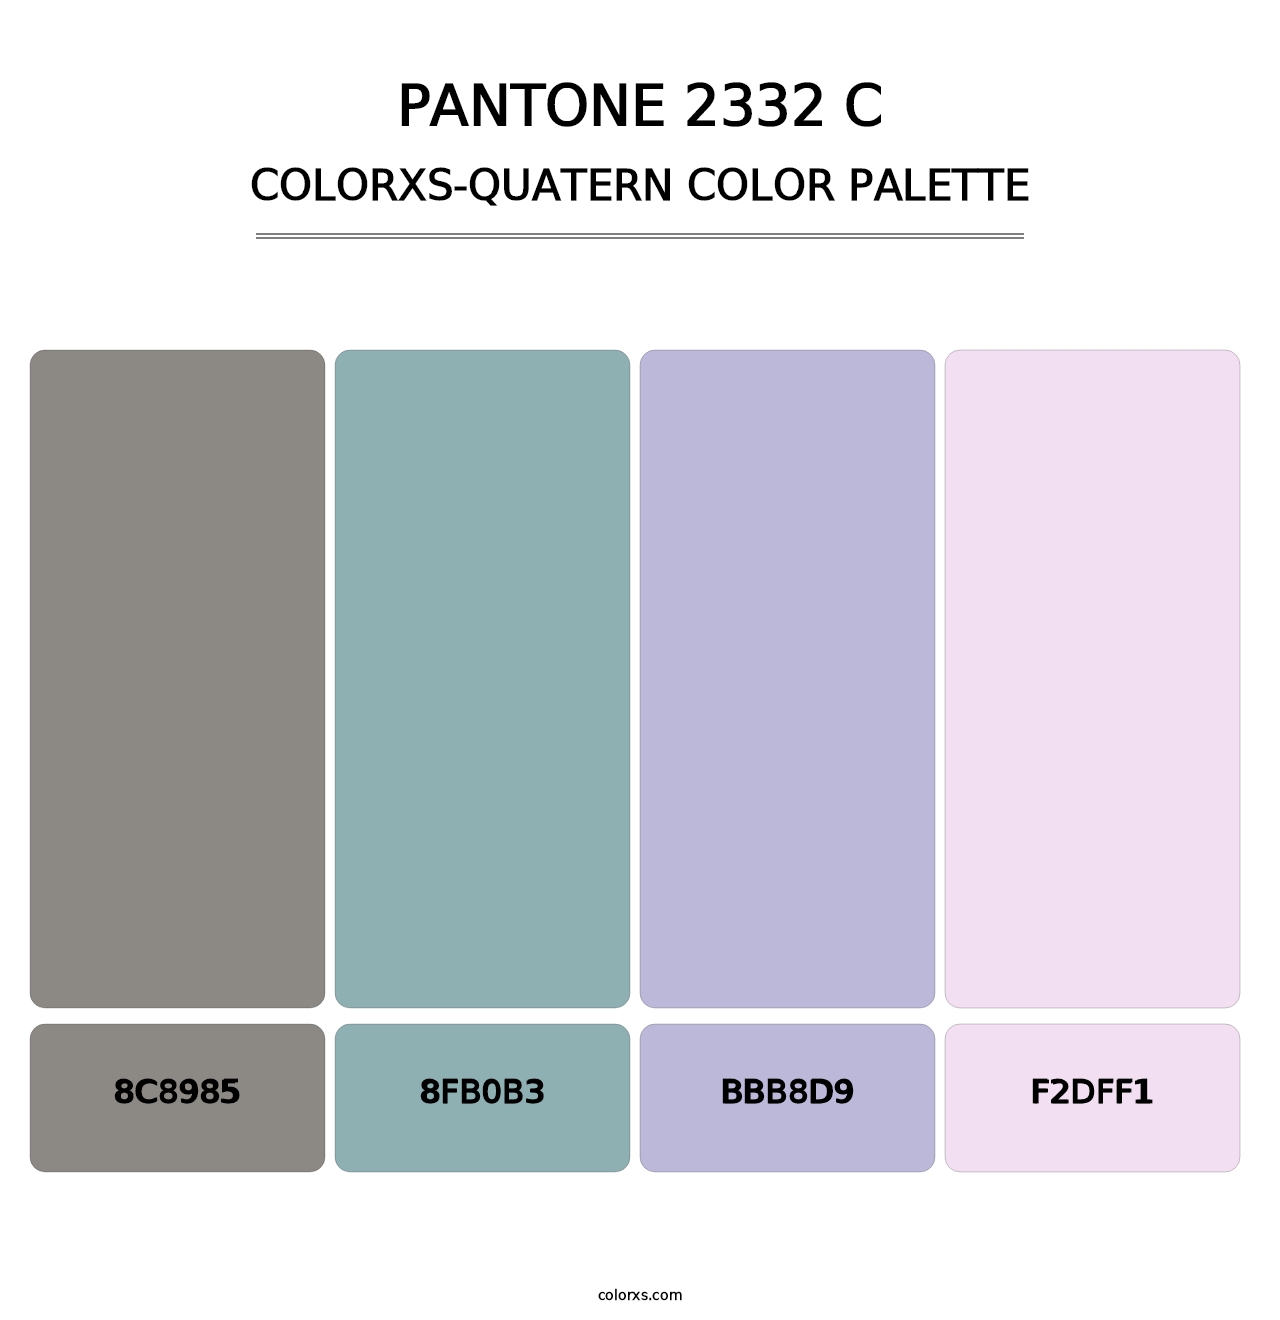 PANTONE 2332 C - Colorxs Quatern Palette